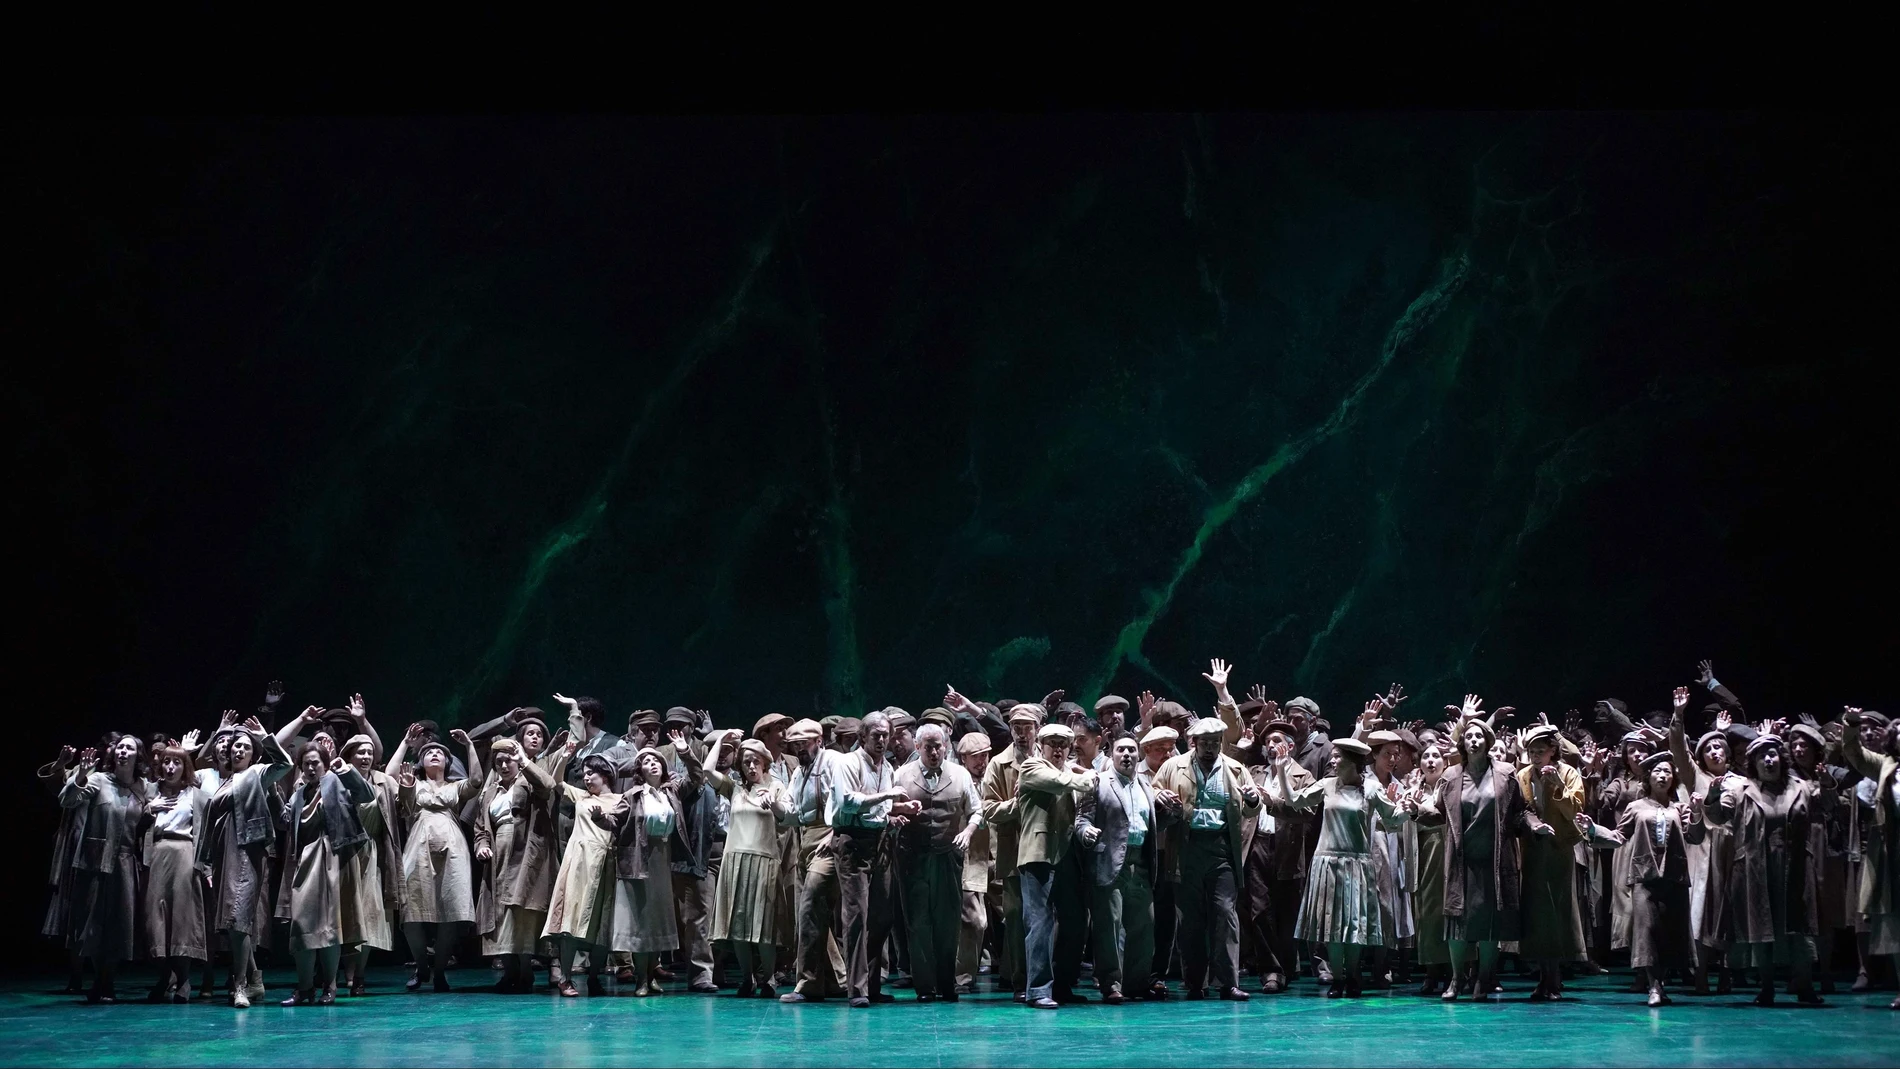 El coro de "Nabucco", en el Teatro Real, bisó el aria "Va pensiero" tras cinco minutos de ovaciones